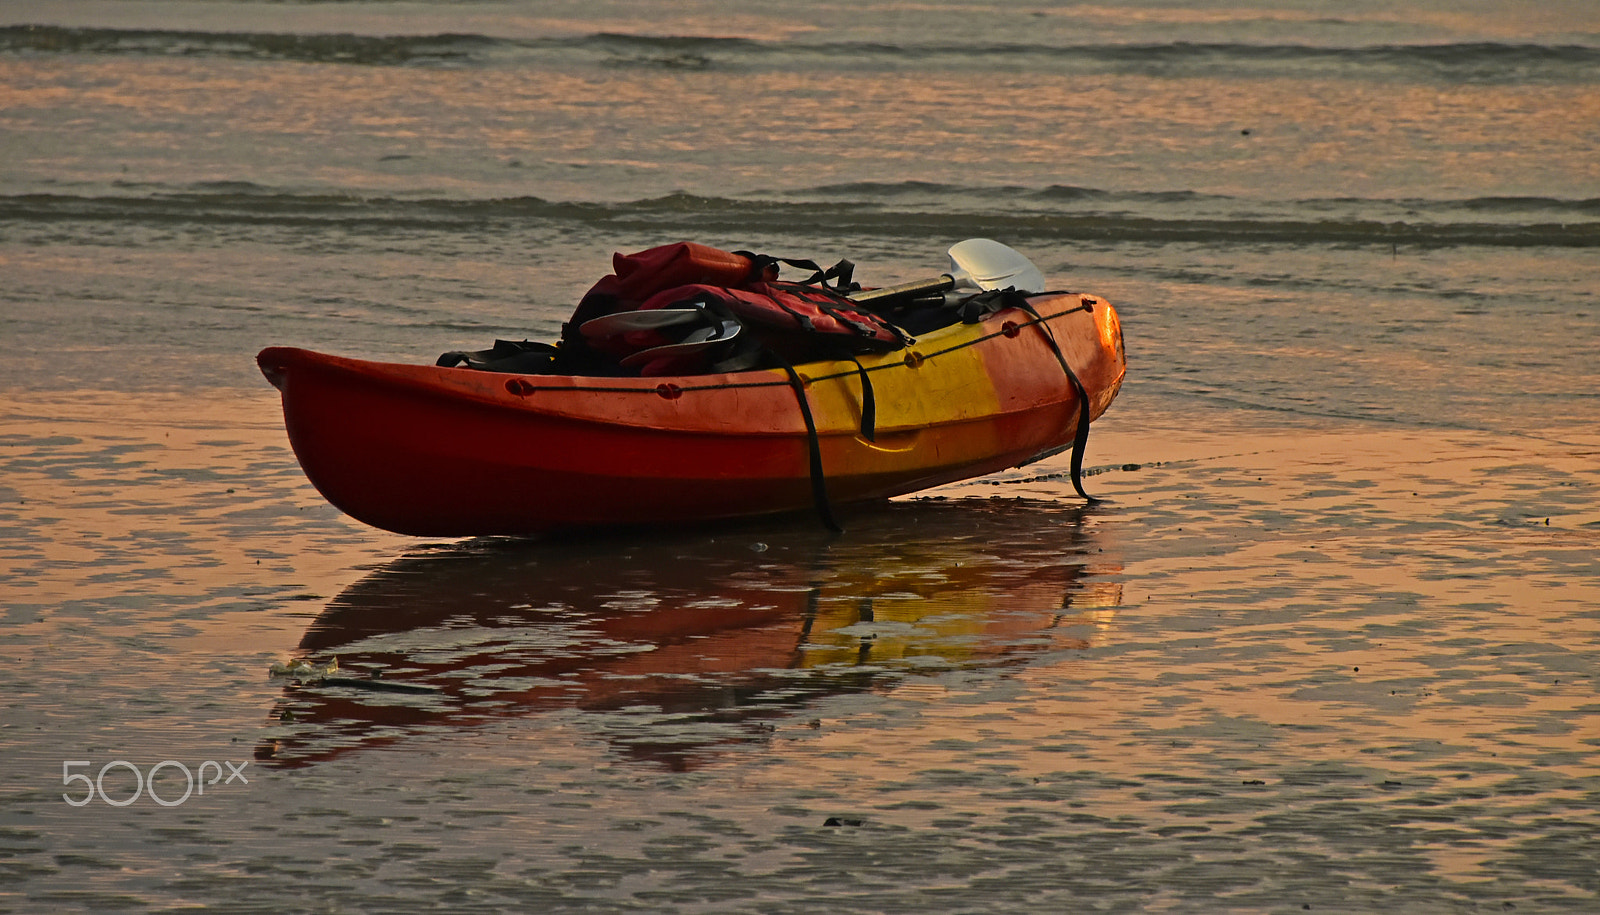 Nikon D5500 + Nikon AF-S DX Nikkor 18-300mm F3.5-6.3G ED VR sample photo. Kayak boat at sunset out of water photography